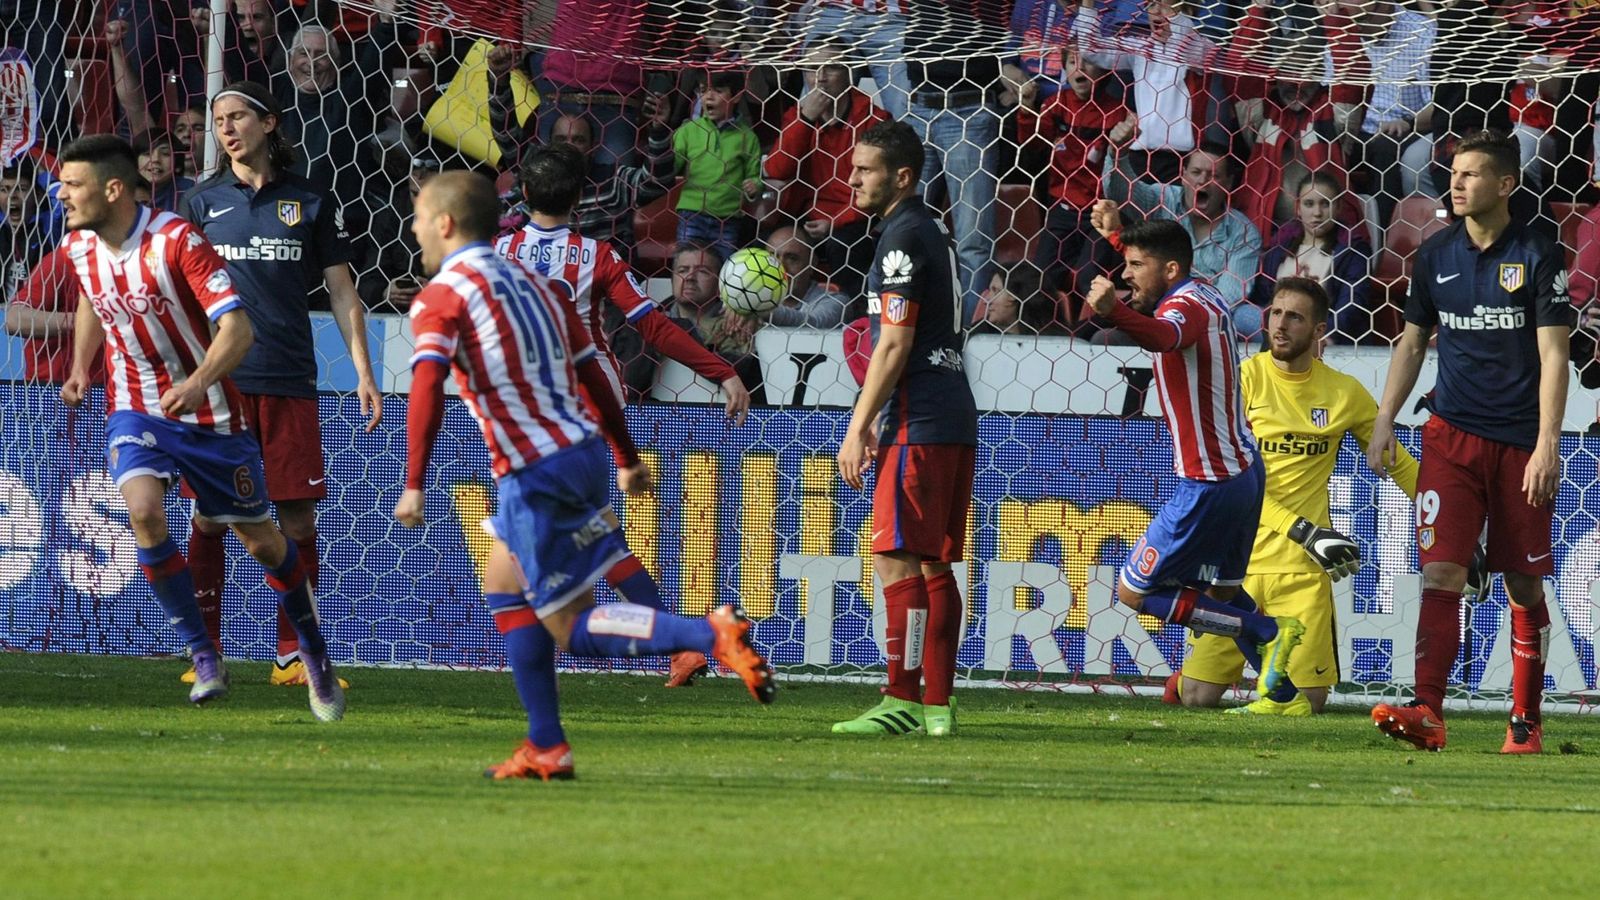 Foto: Los jugadores del Sporting de Gijón celebran un gol ante el Atlético de Madrid el pasado sábado (Reuters)